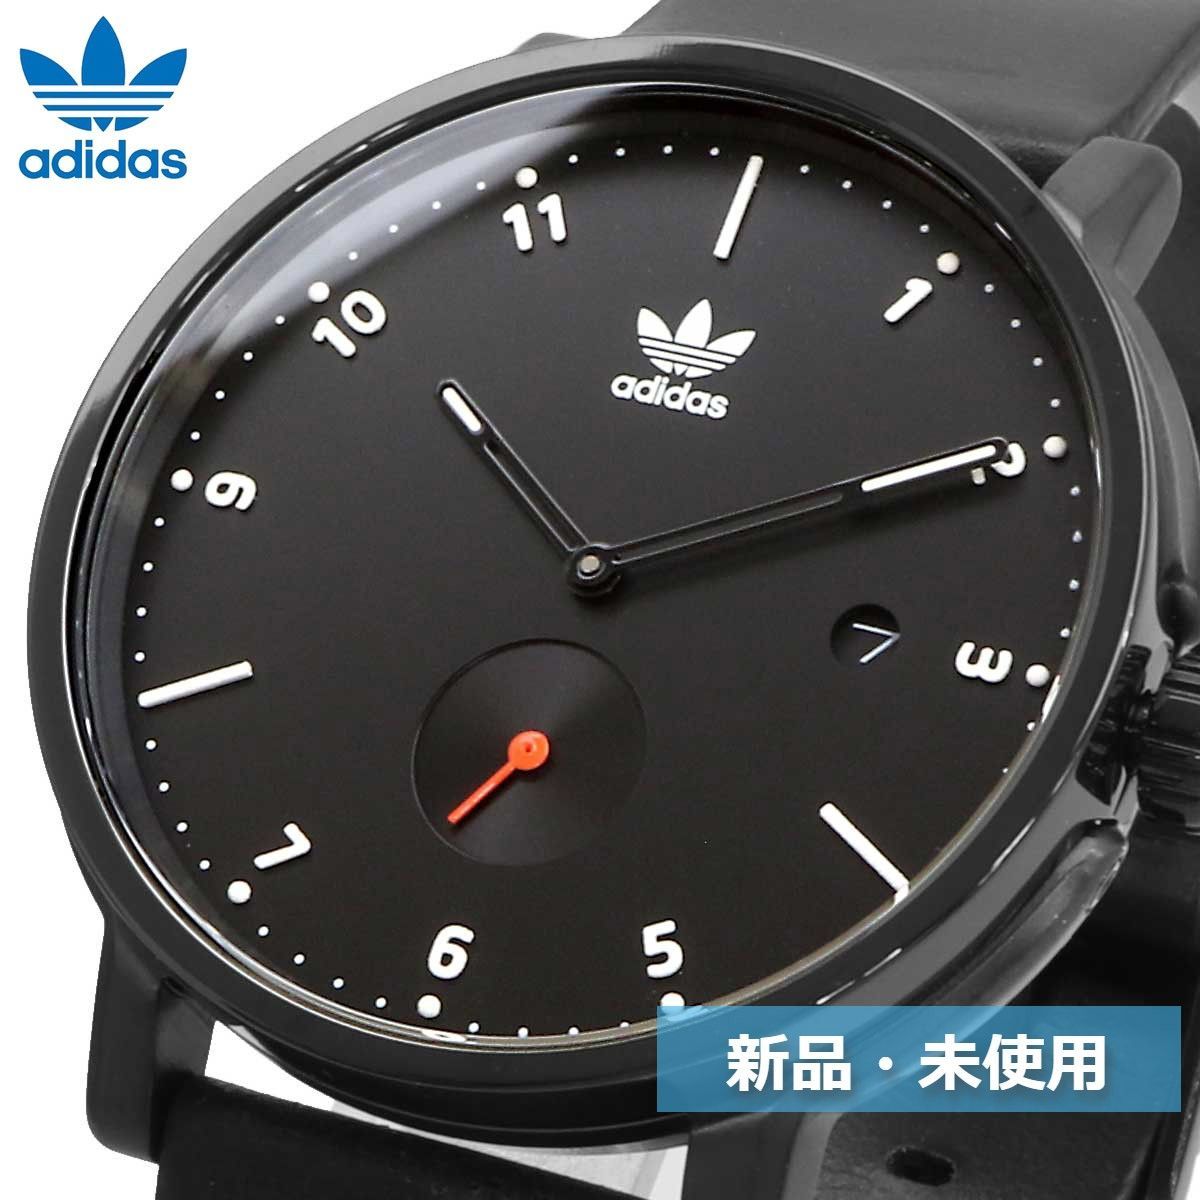 adidas アディダス 腕時計 メンズ Z12-3037-00 【並行輸入品